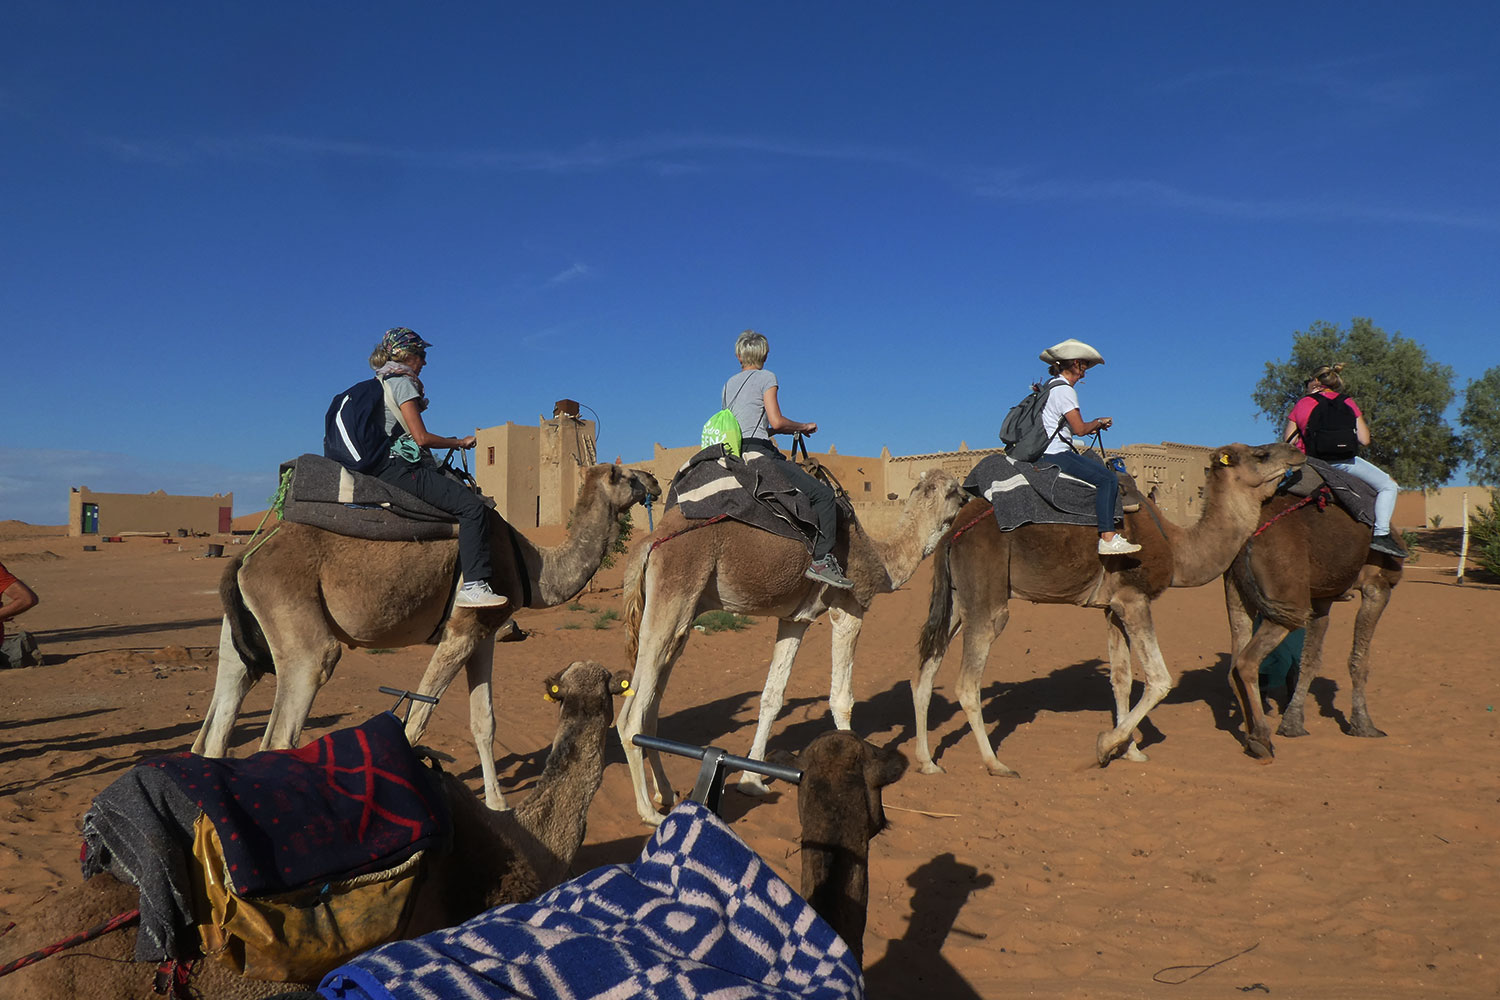 Kundalini Yoga nel deserto del Sahara